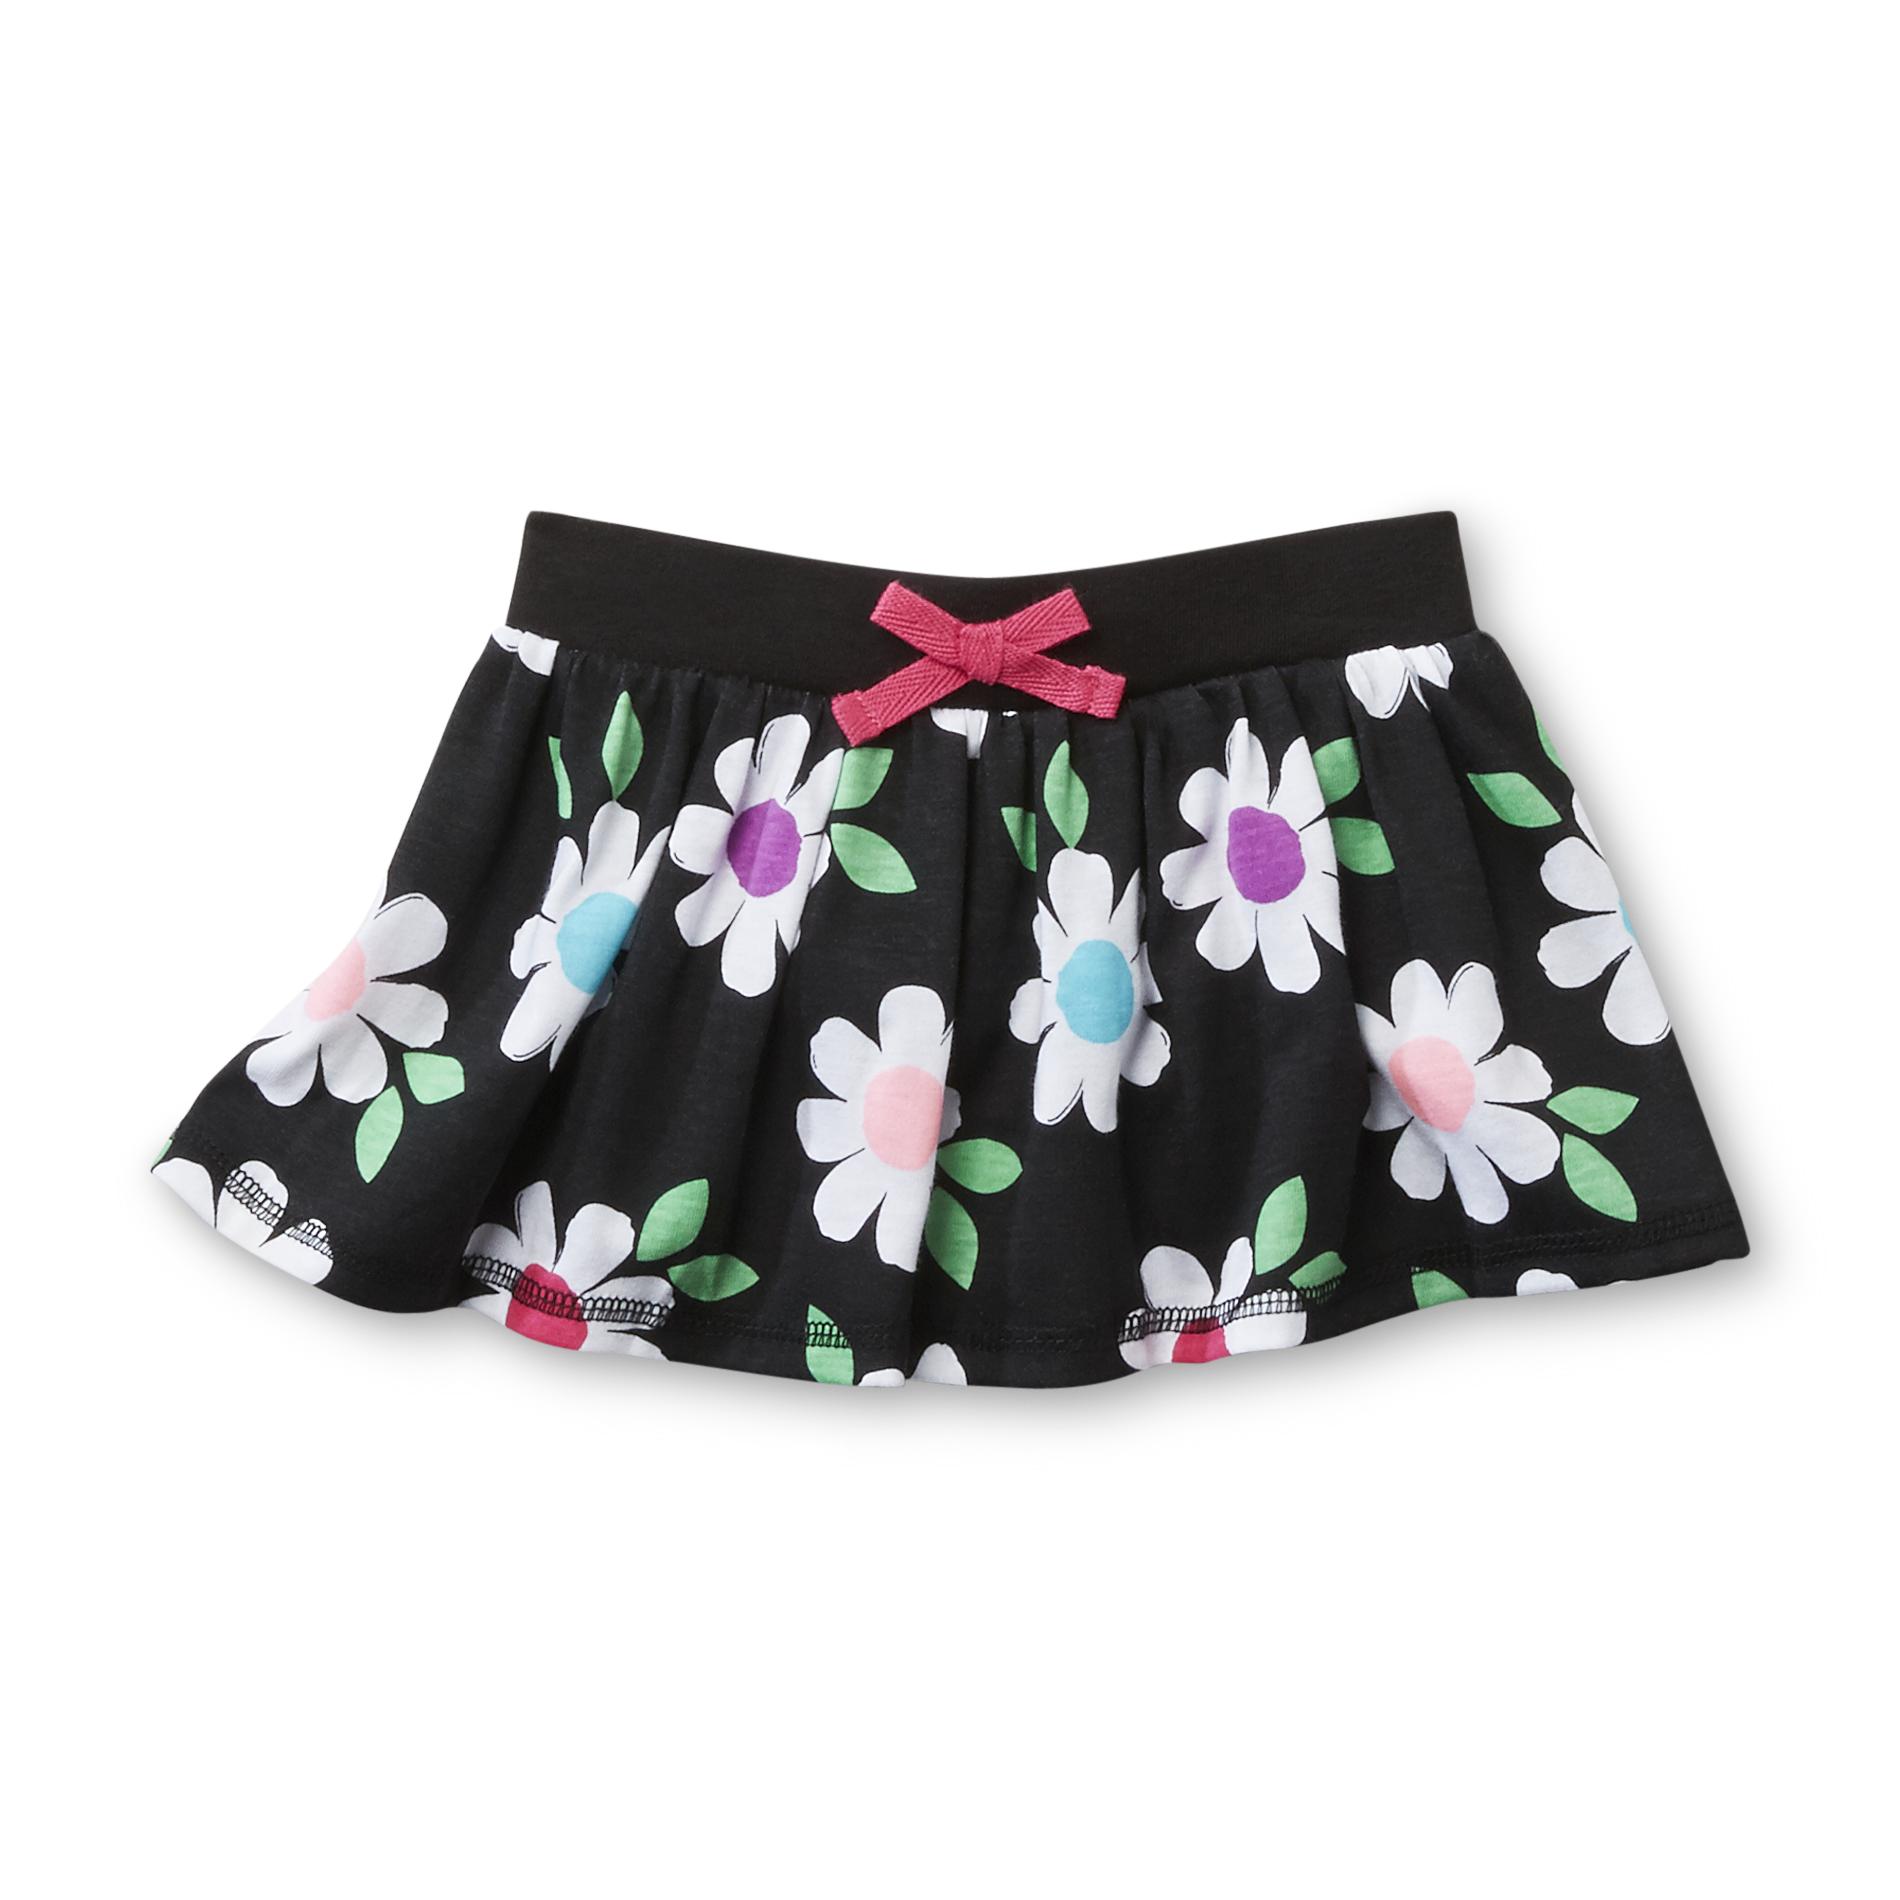 WonderKids Infant & Toddler Girl's Skirt - Floral Print